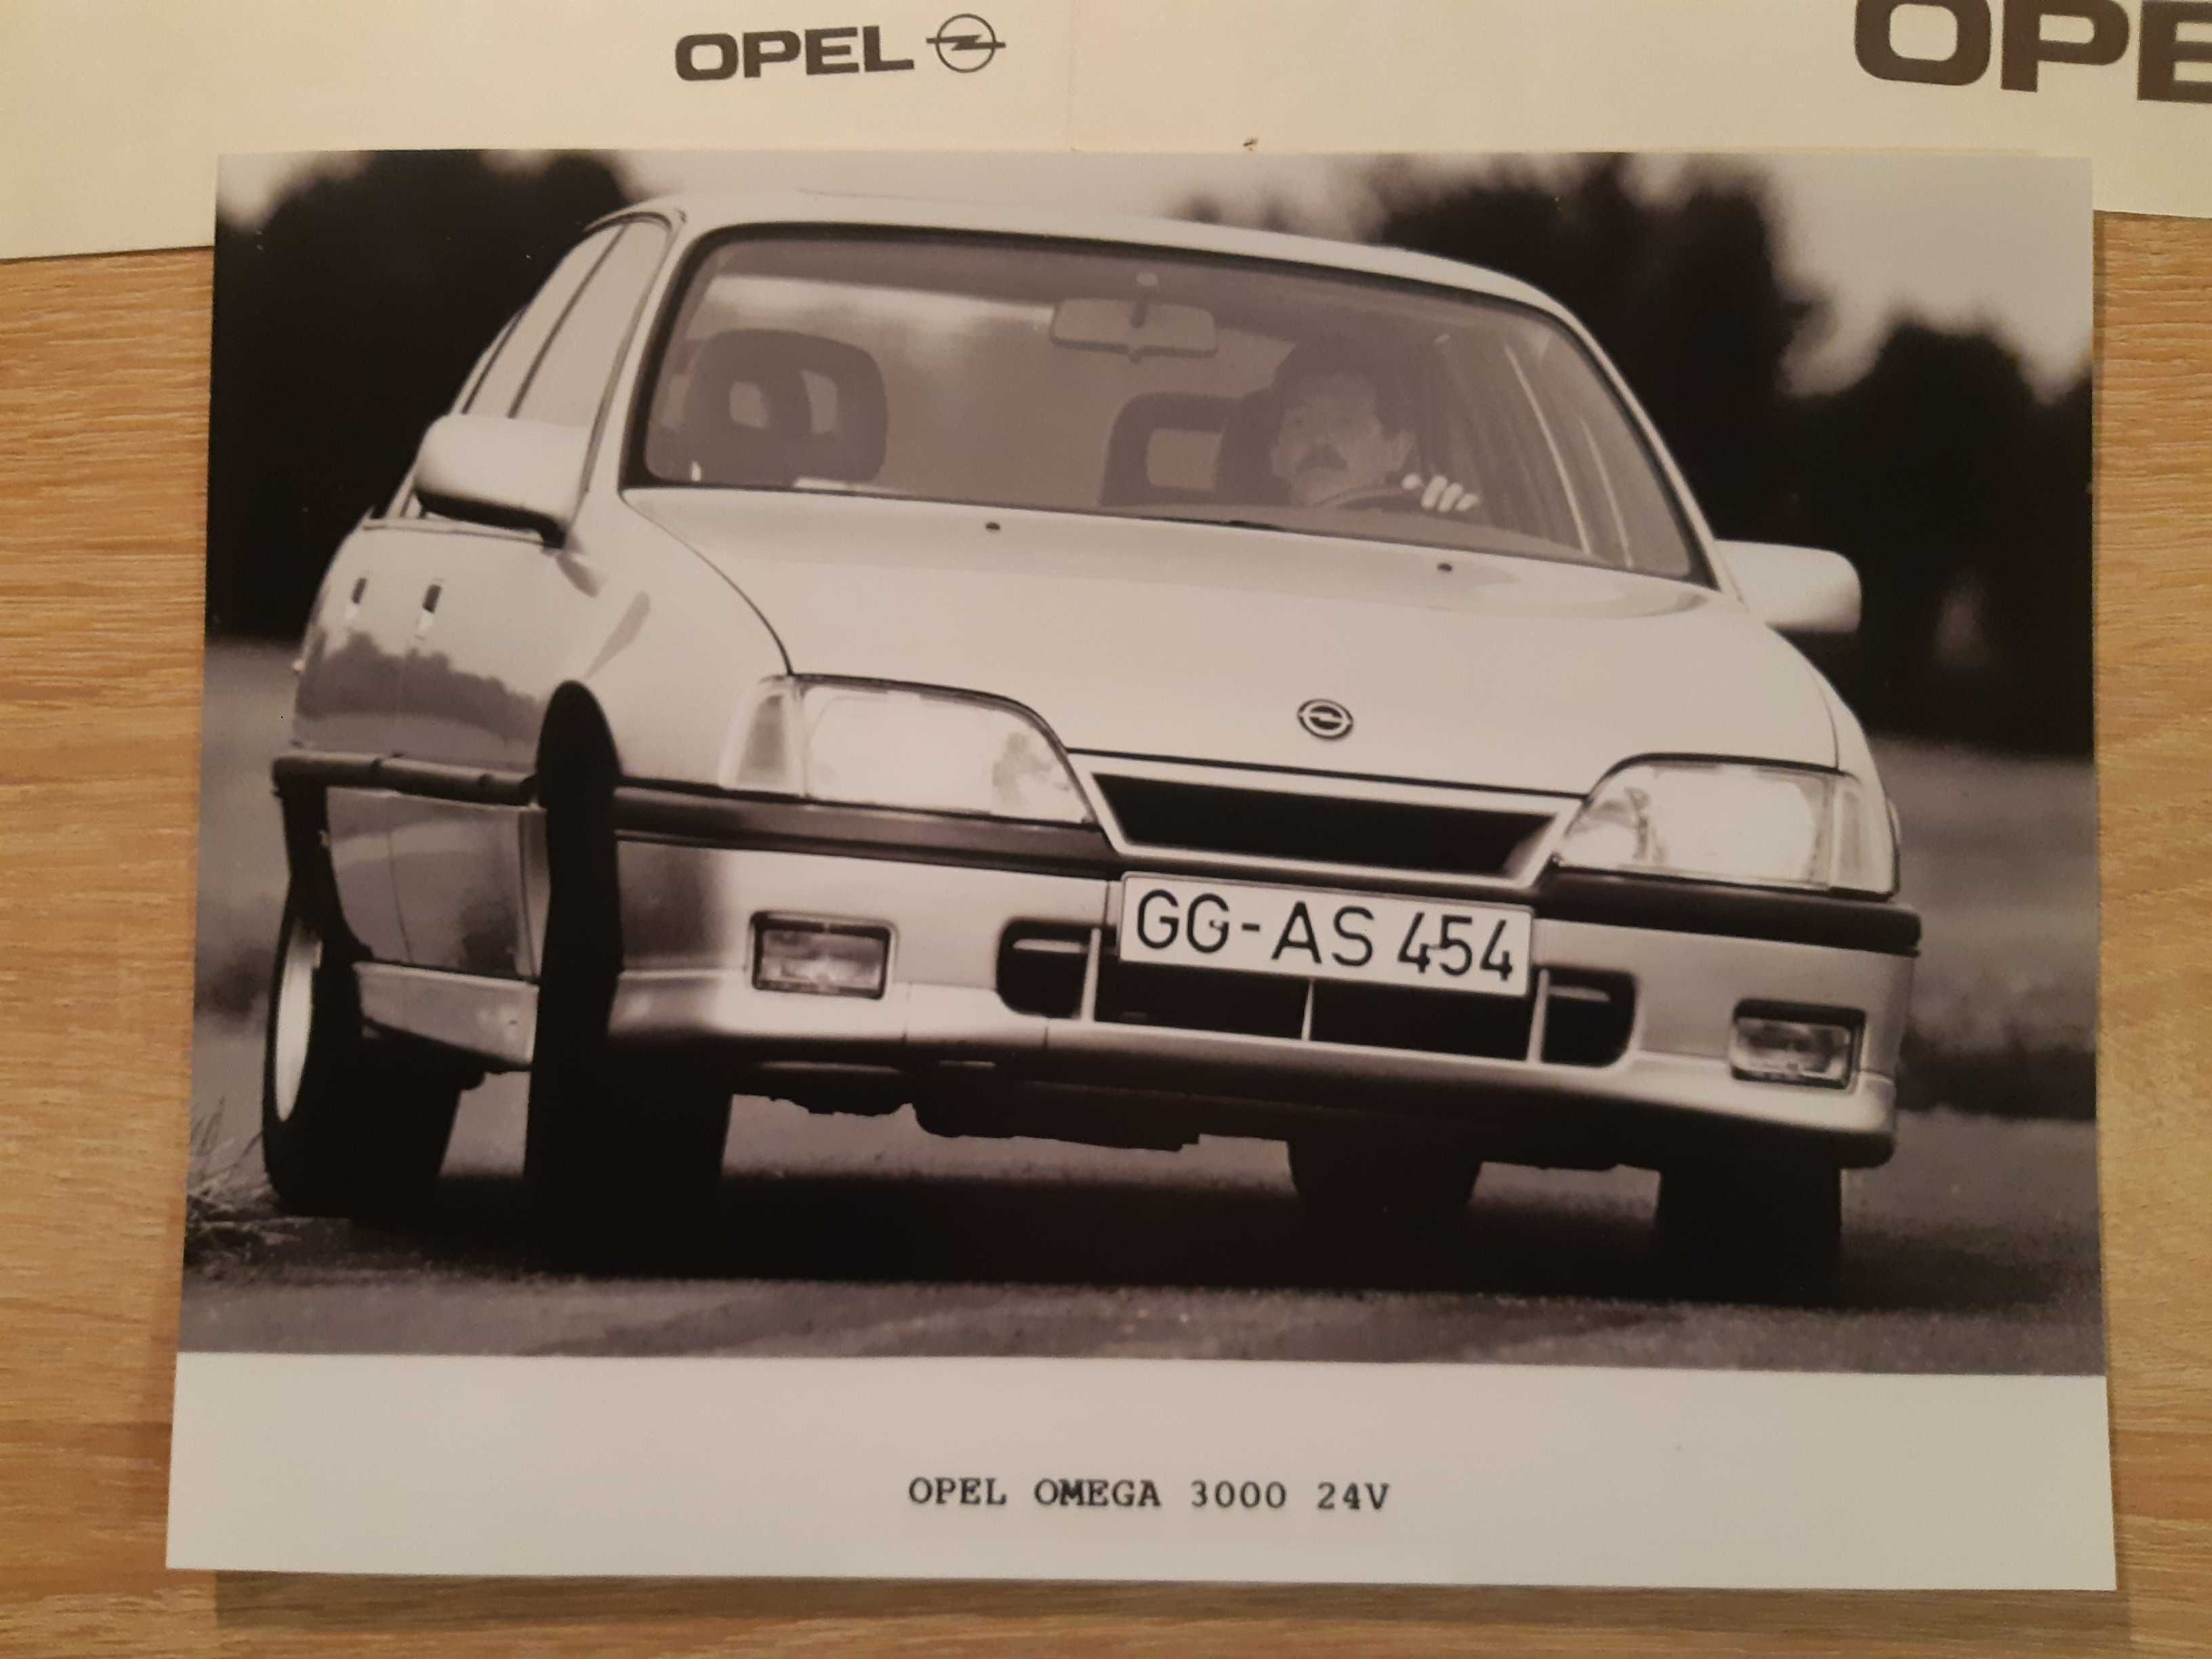 Opel Omega 3000 Zdjęcie prasowe i plansze A4 przekrój i wymiary